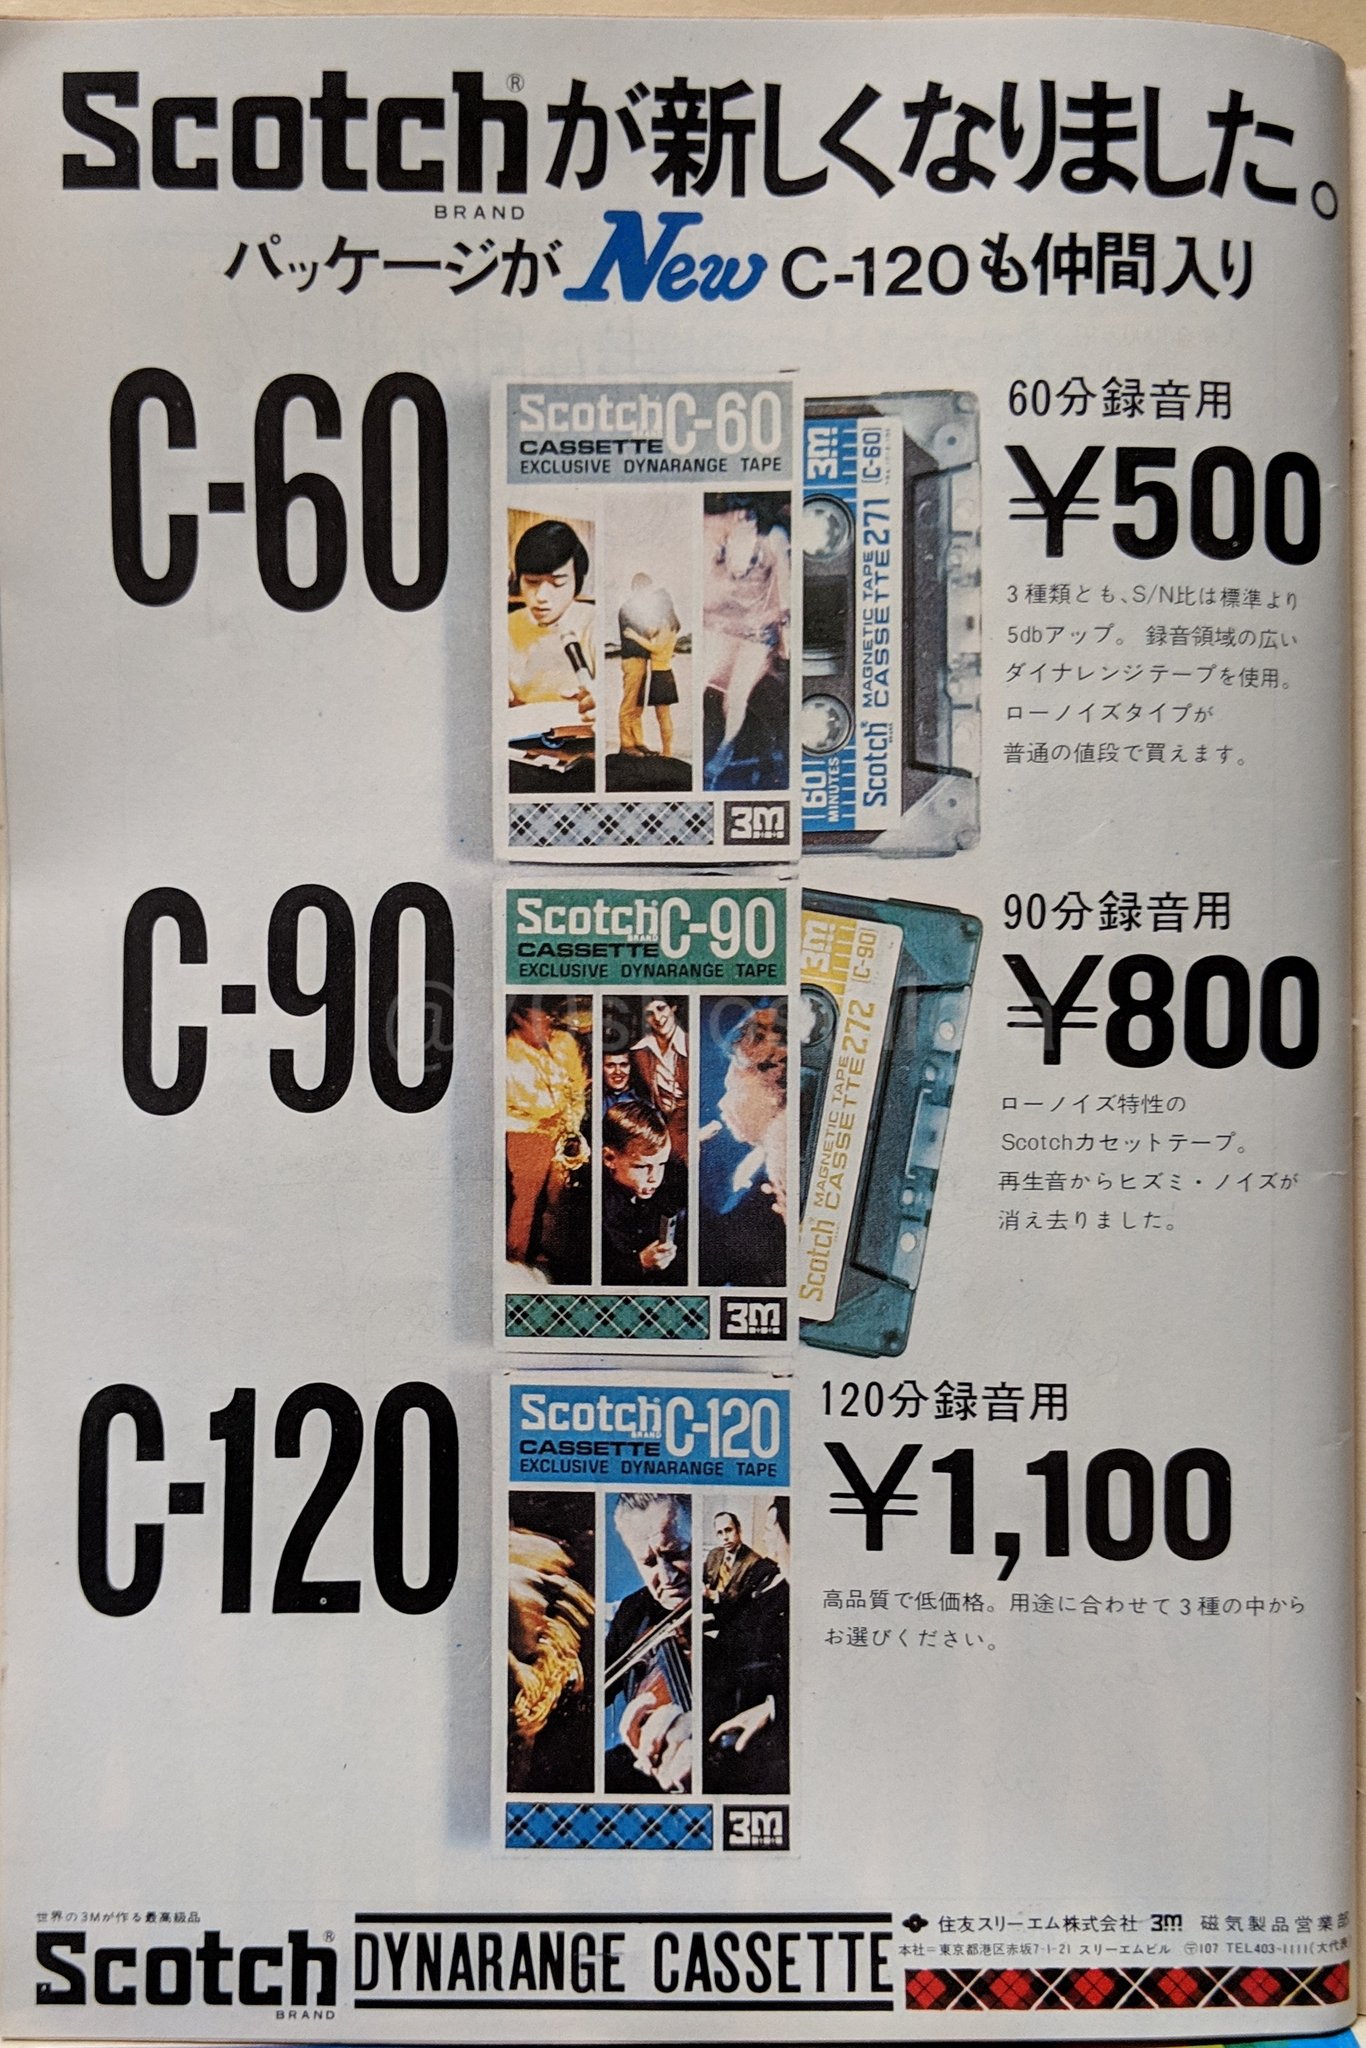 パンツ・ハンドブック サンケイマーケティング 昭和56年10月24日発行初版